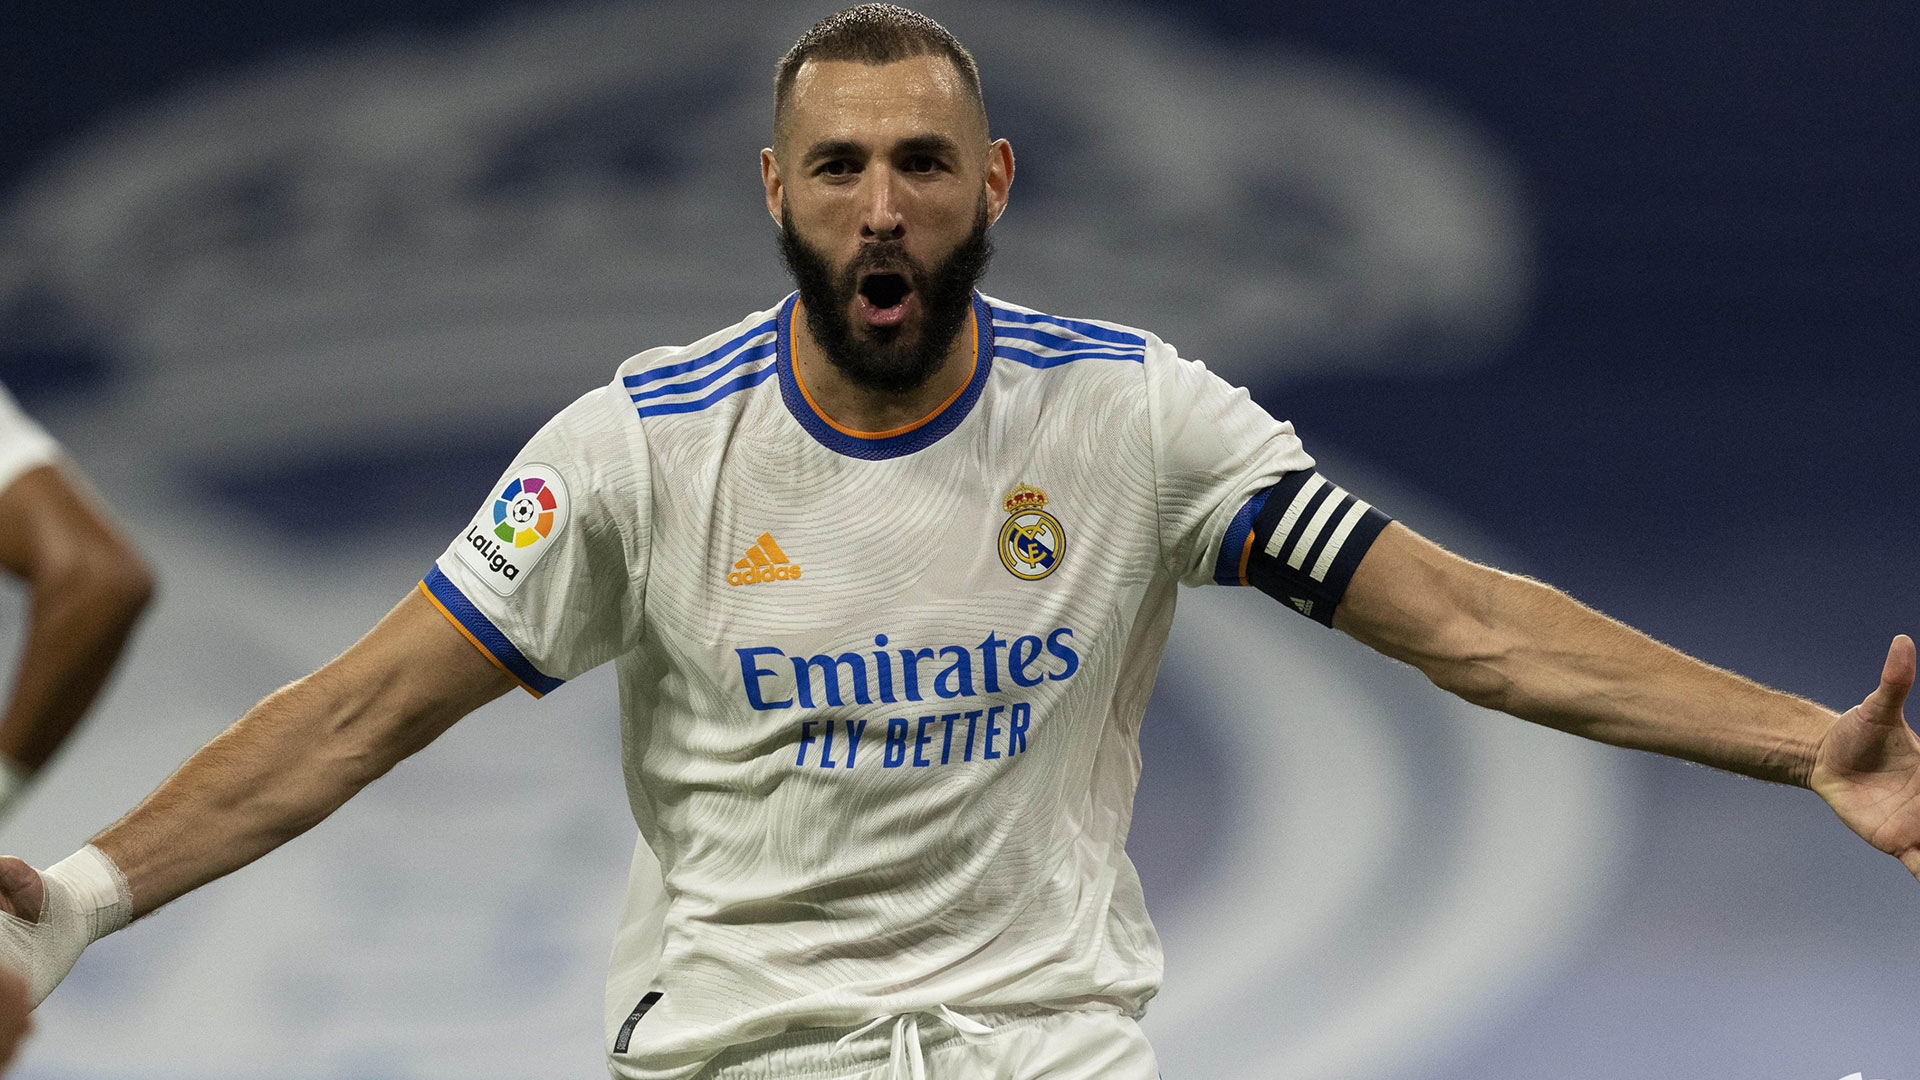 El delantero del Real Madrid celebrando uno de sus tres goles conseguidos en la cuarta fecha del campeonato español ante el Celta de Vigo. (Foto Prensa Libre: LaLiga Twitter)